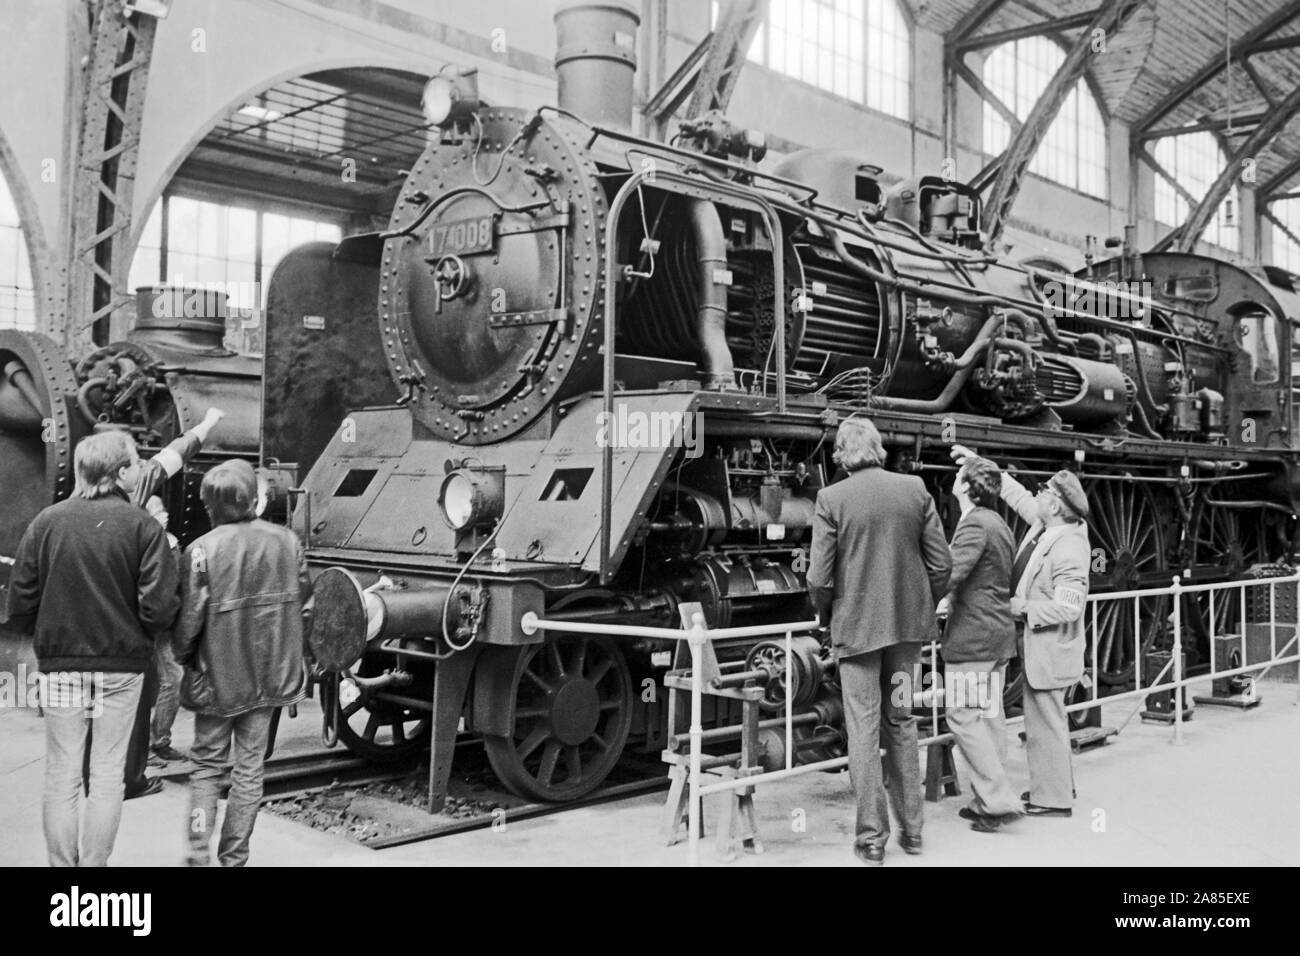 Preußische P 8 Dampflokomotive im Eisenbahnmuseum am ehemaligen Berlin Hamburger Bahnhof, Deutschland 1984. Prussian P 8 steam locomotive at the railway museum of the former Berlin Hamburg railway station, Germany 1984. Stock Photo